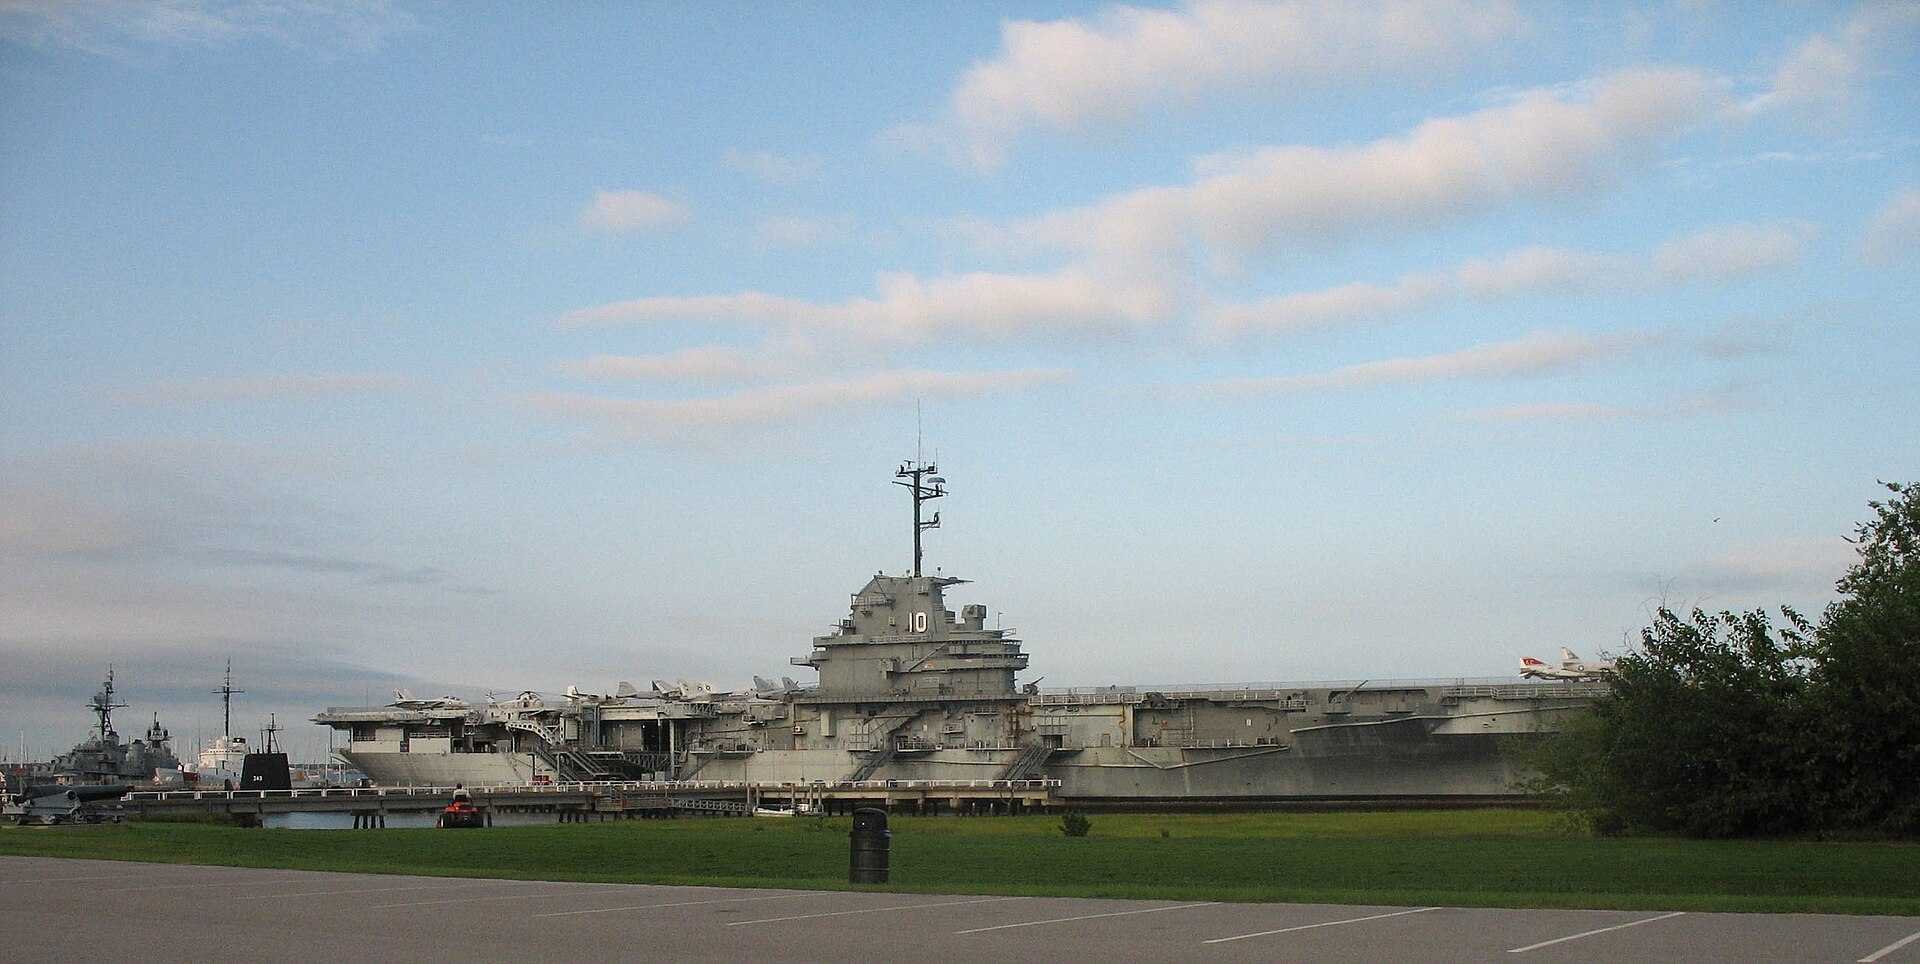 USS Yorktown (CVS-10) at Patriots Point 2006.jpg